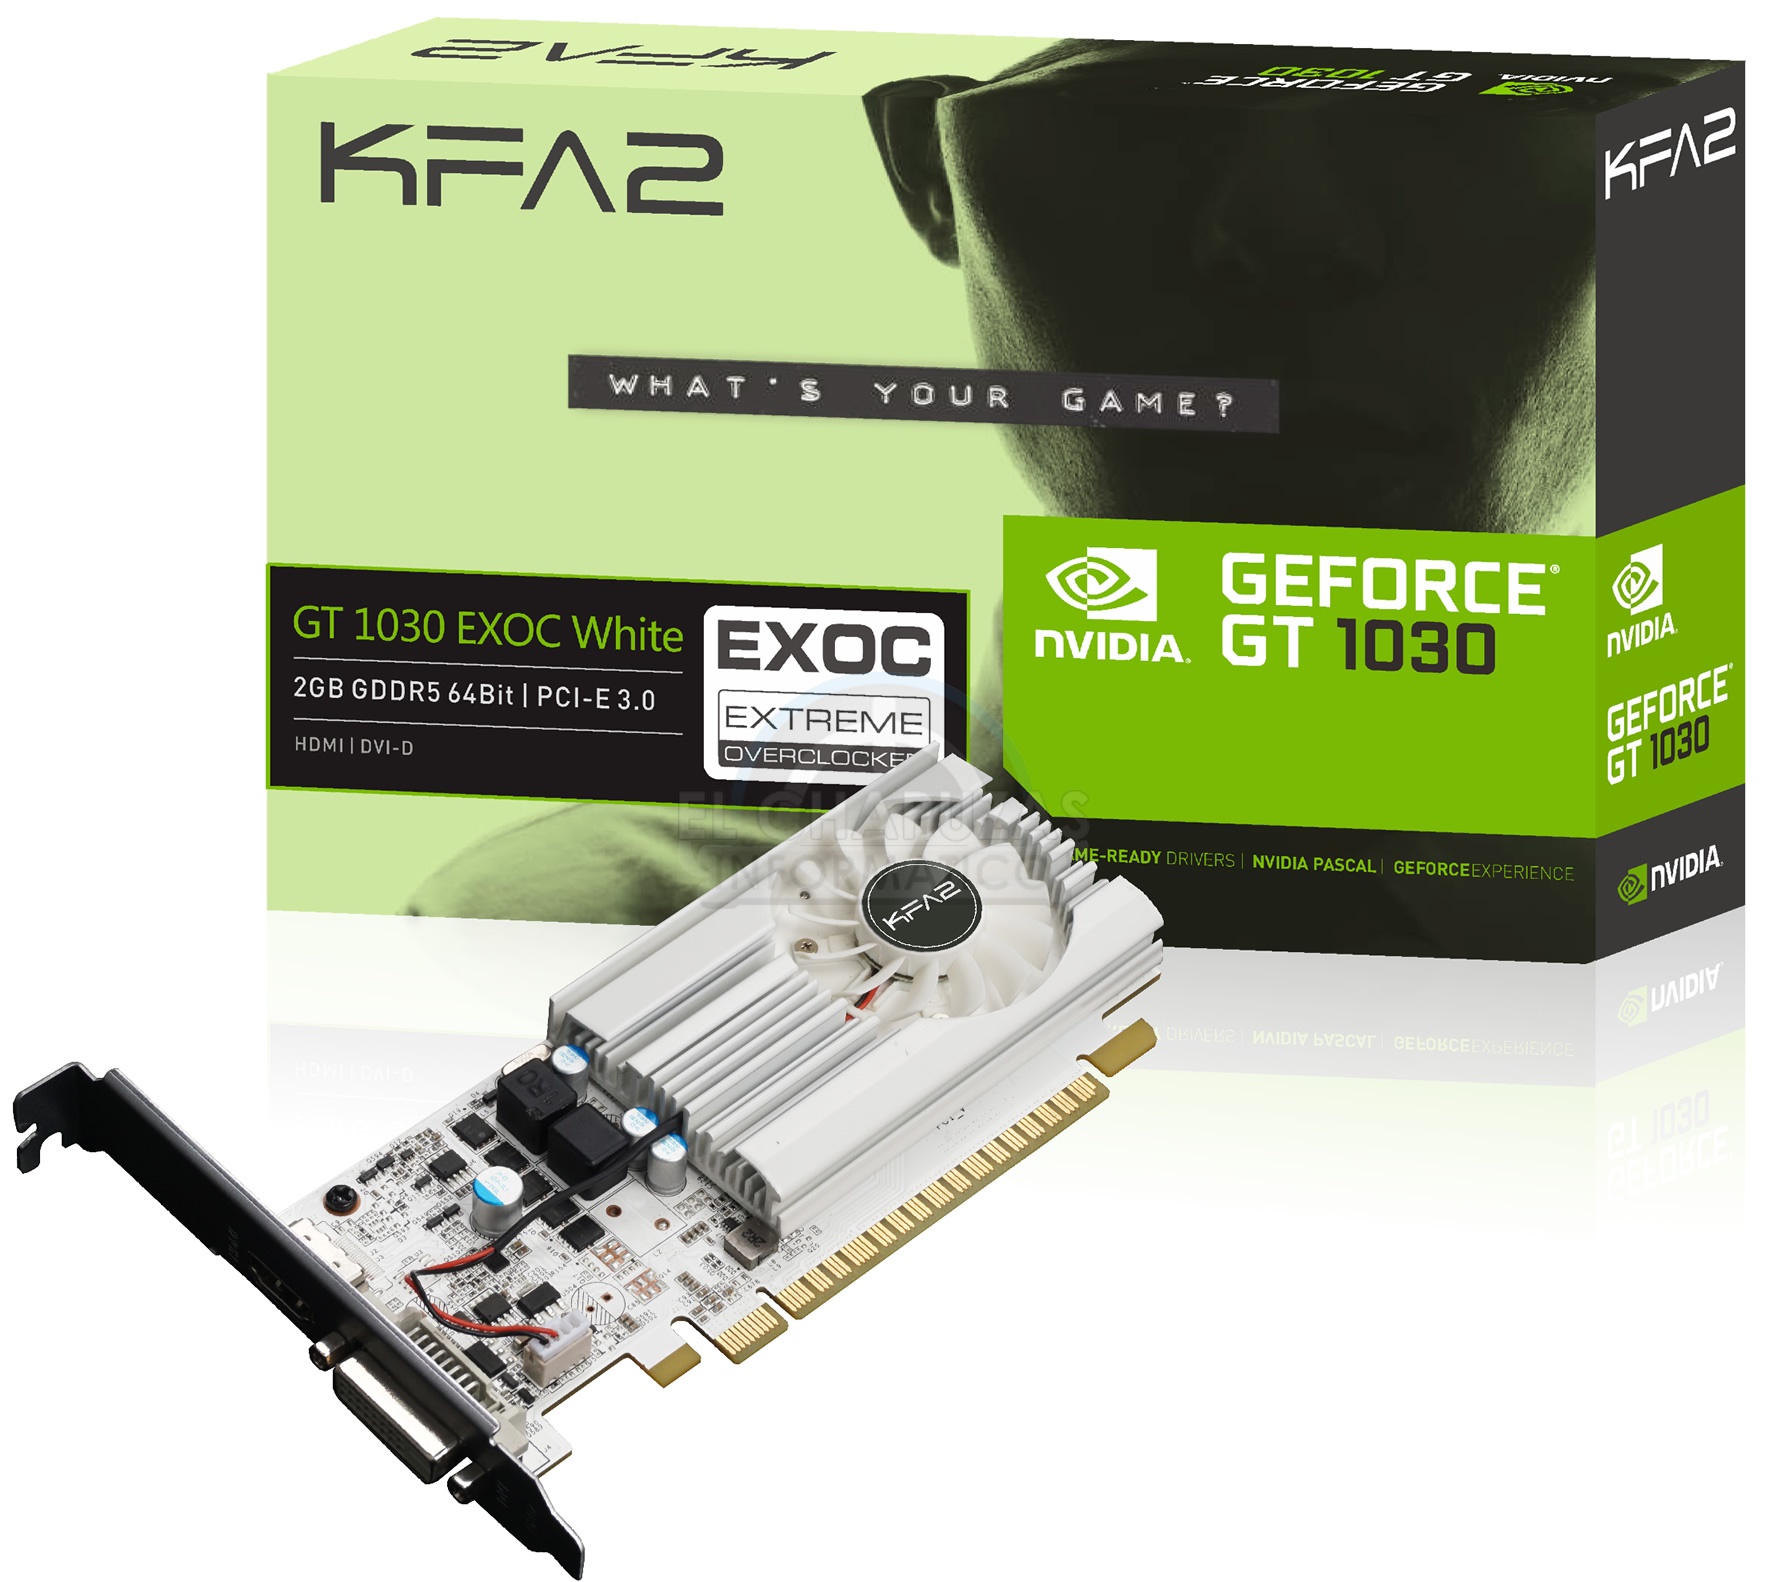 Immagine pubblicata in relazione al seguente contenuto: Foto e specifiche della video card GeForce GT 1030 EXOC White di KFA2 | Nome immagine: news26246_KFA2-GeForce-GT-1030-EXOC-White_1.jpg